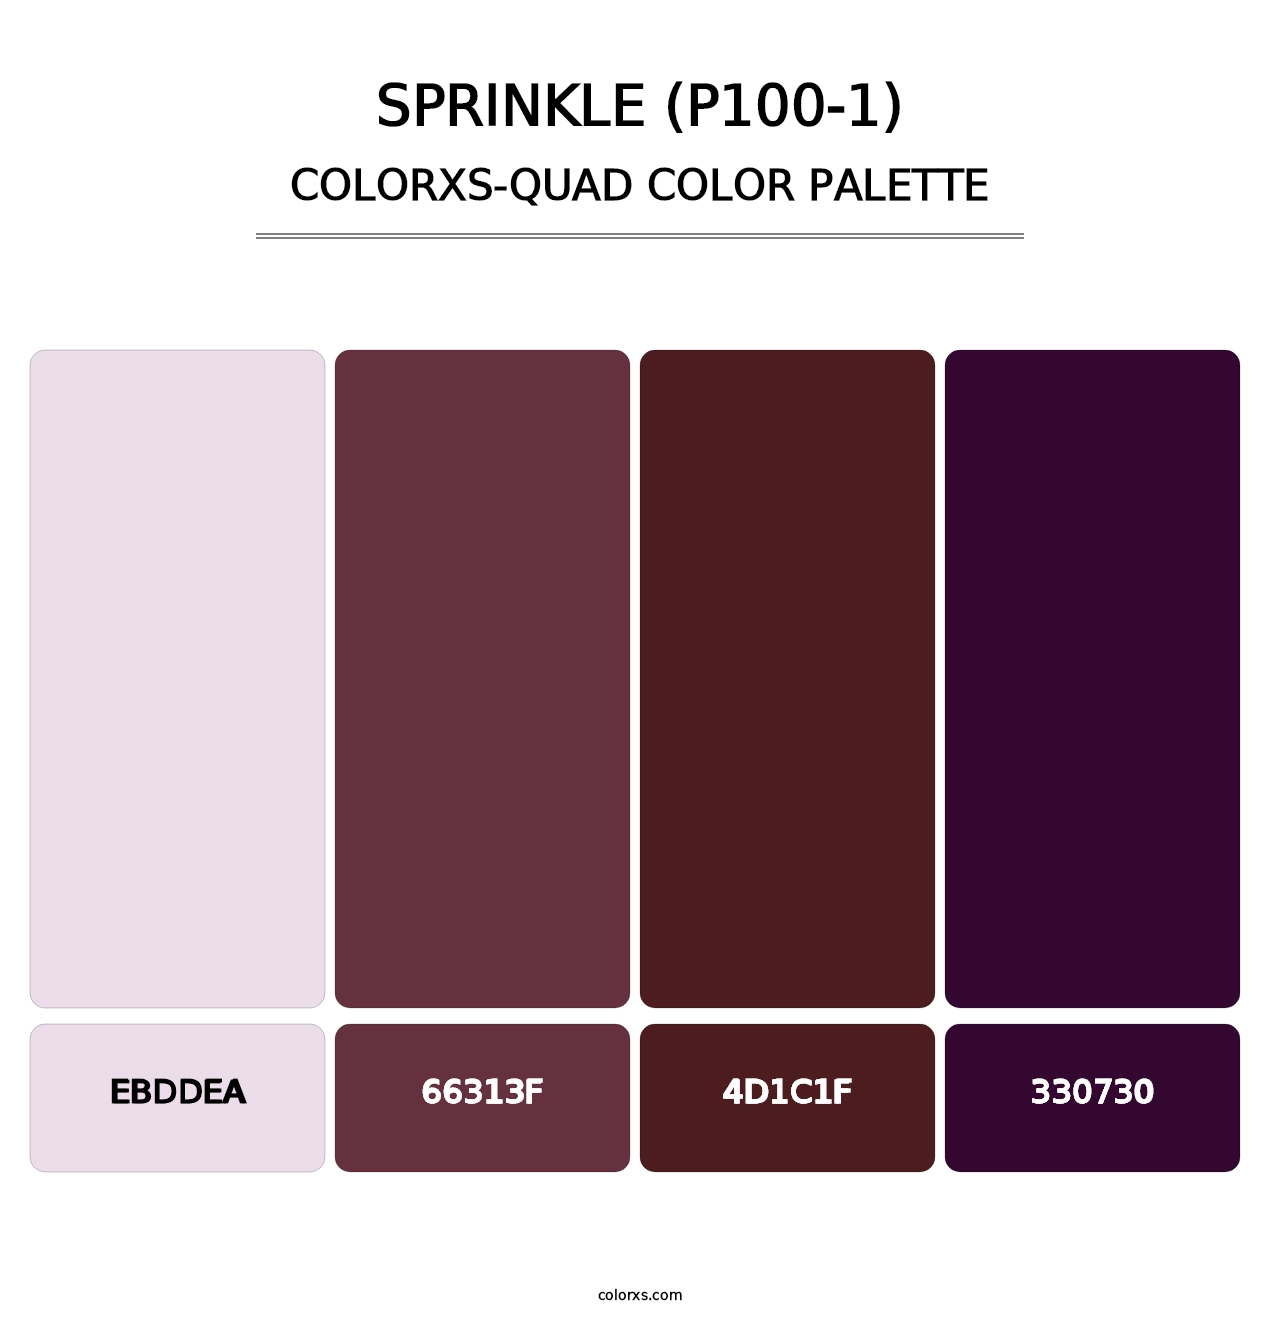 Sprinkle (P100-1) - Colorxs Quad Palette